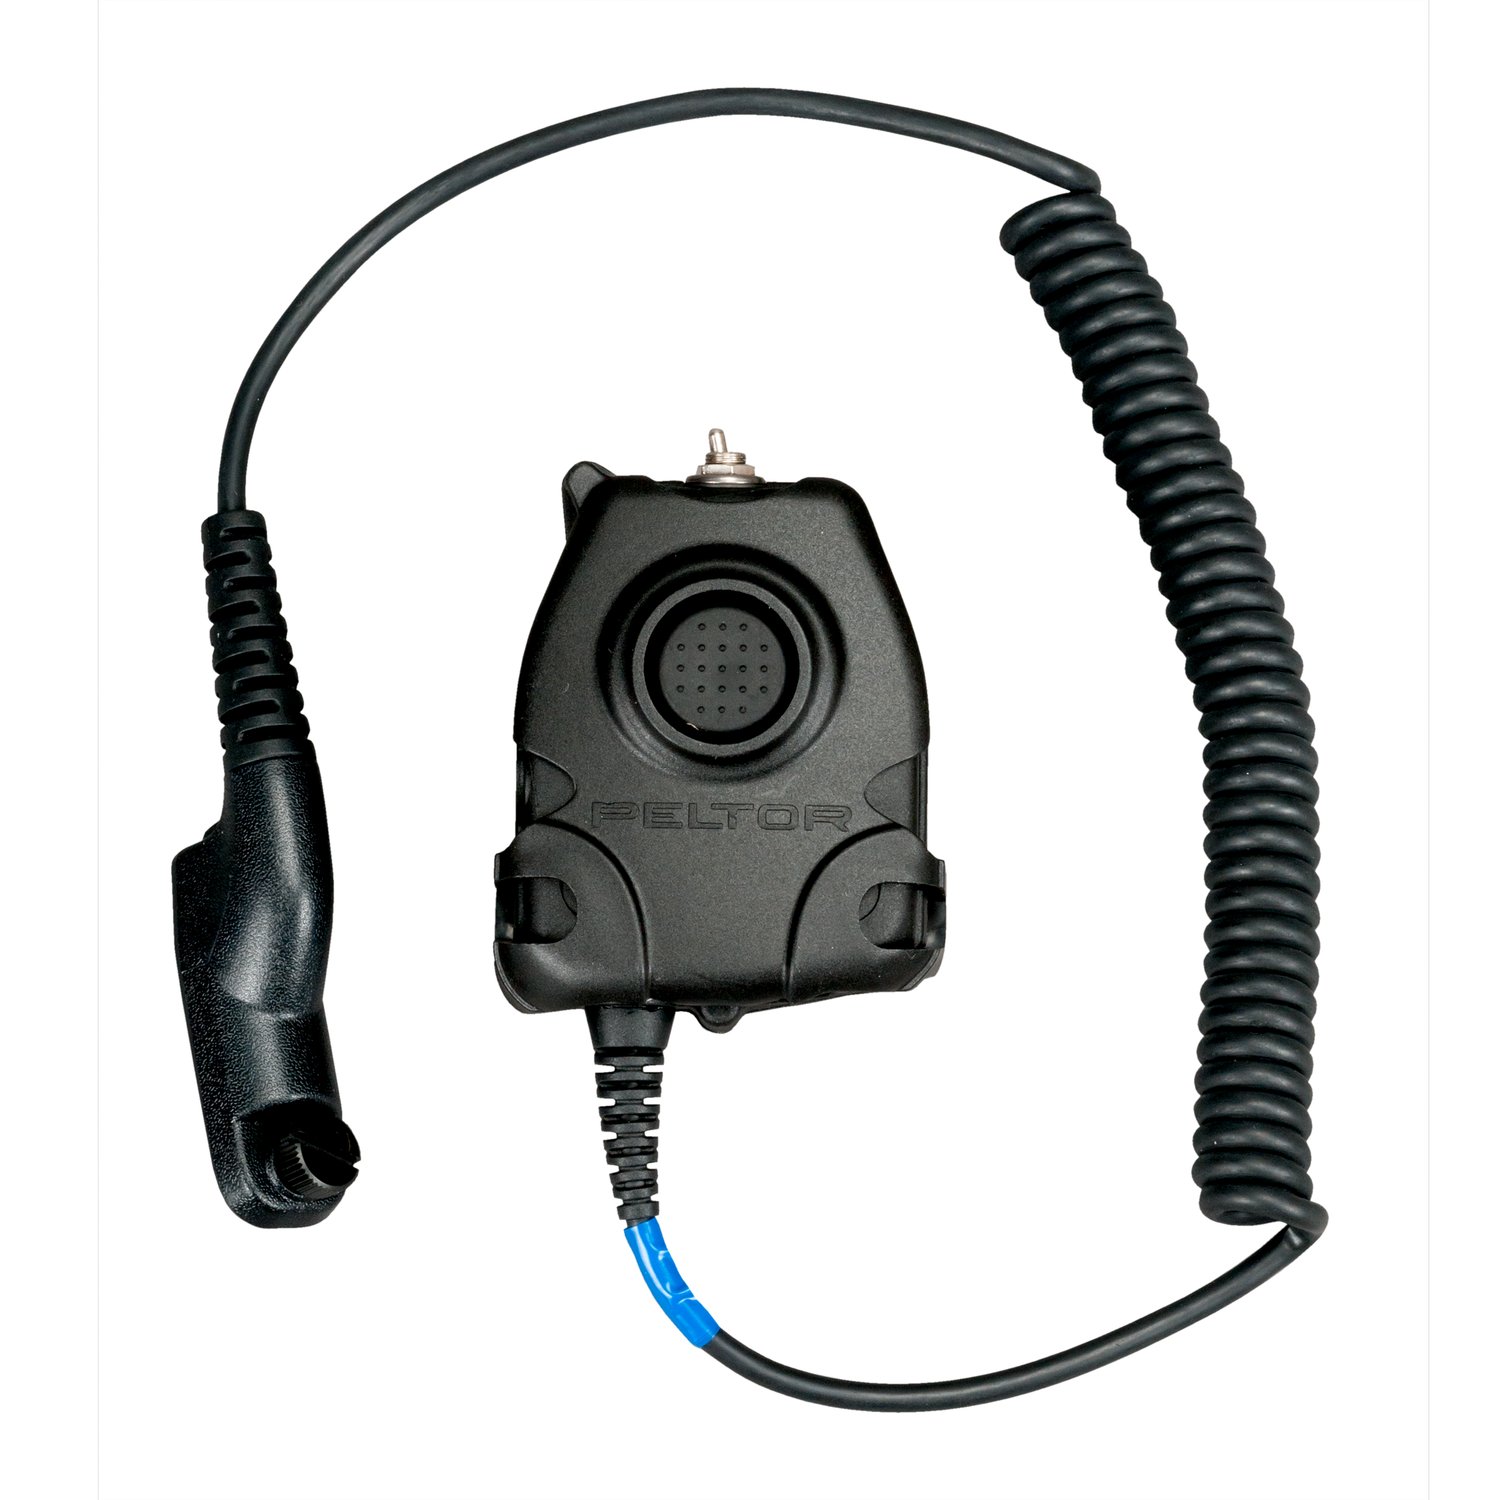 7010384262 - 3M PELTOR Push-To-Talk (PTT) Adapter, Motorola Turbo, NATO Wiring,
FL5063-02 1 EA/Case